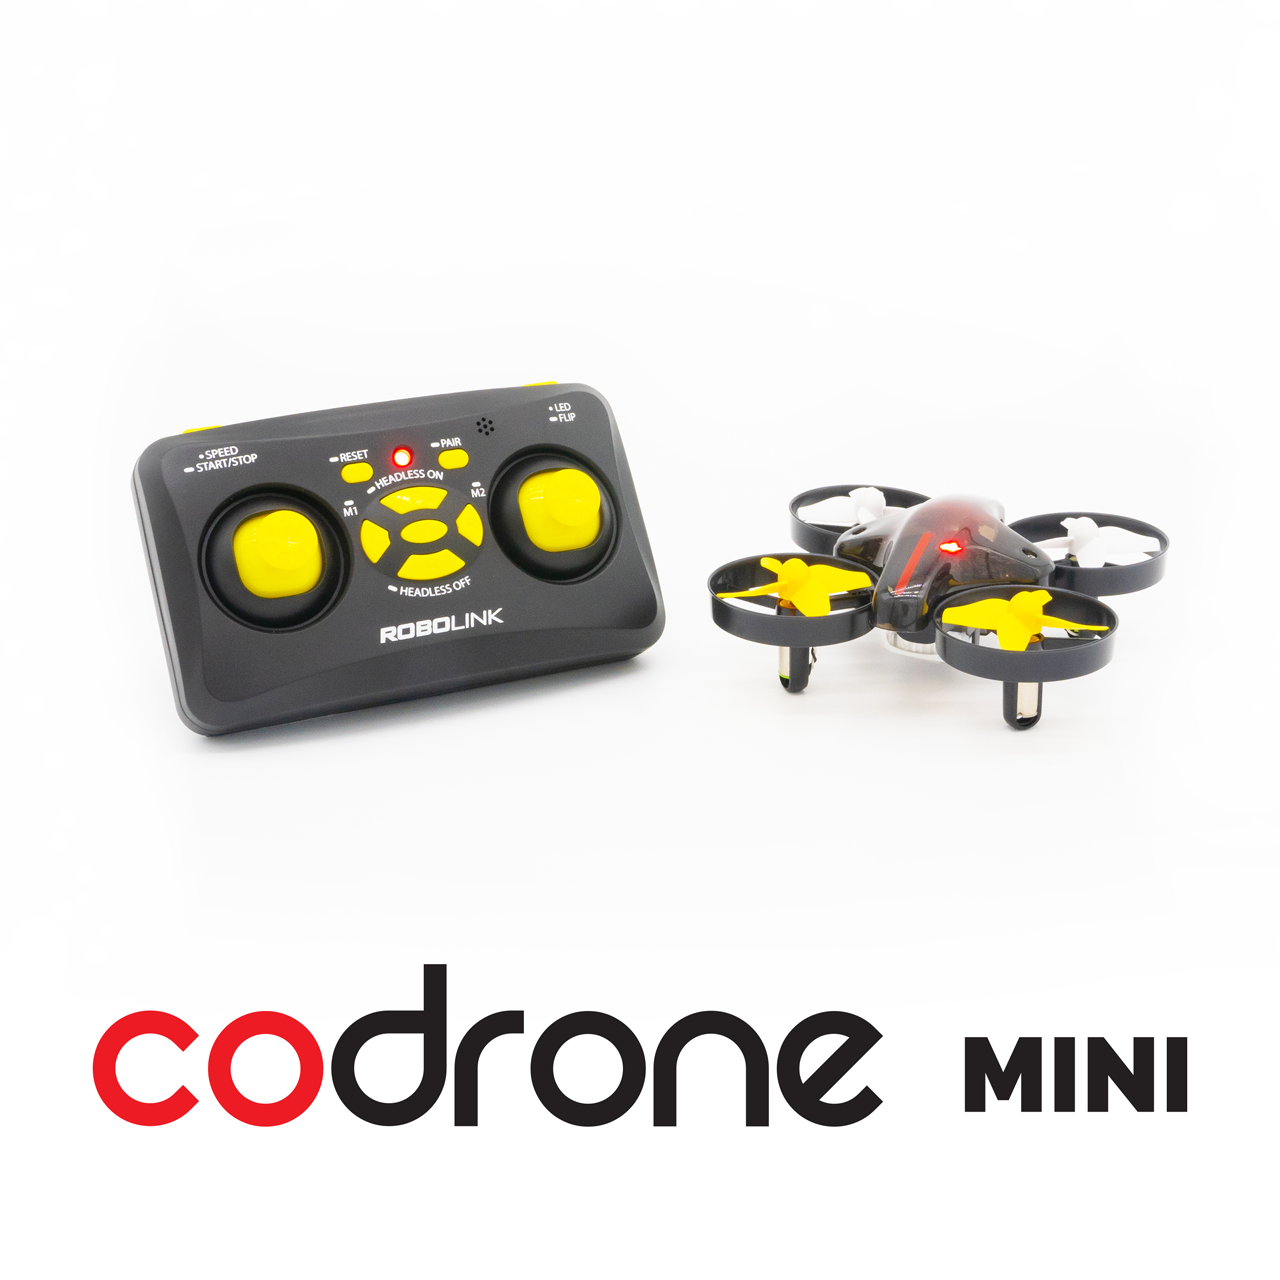 CoDrone Mini:   Code a drone